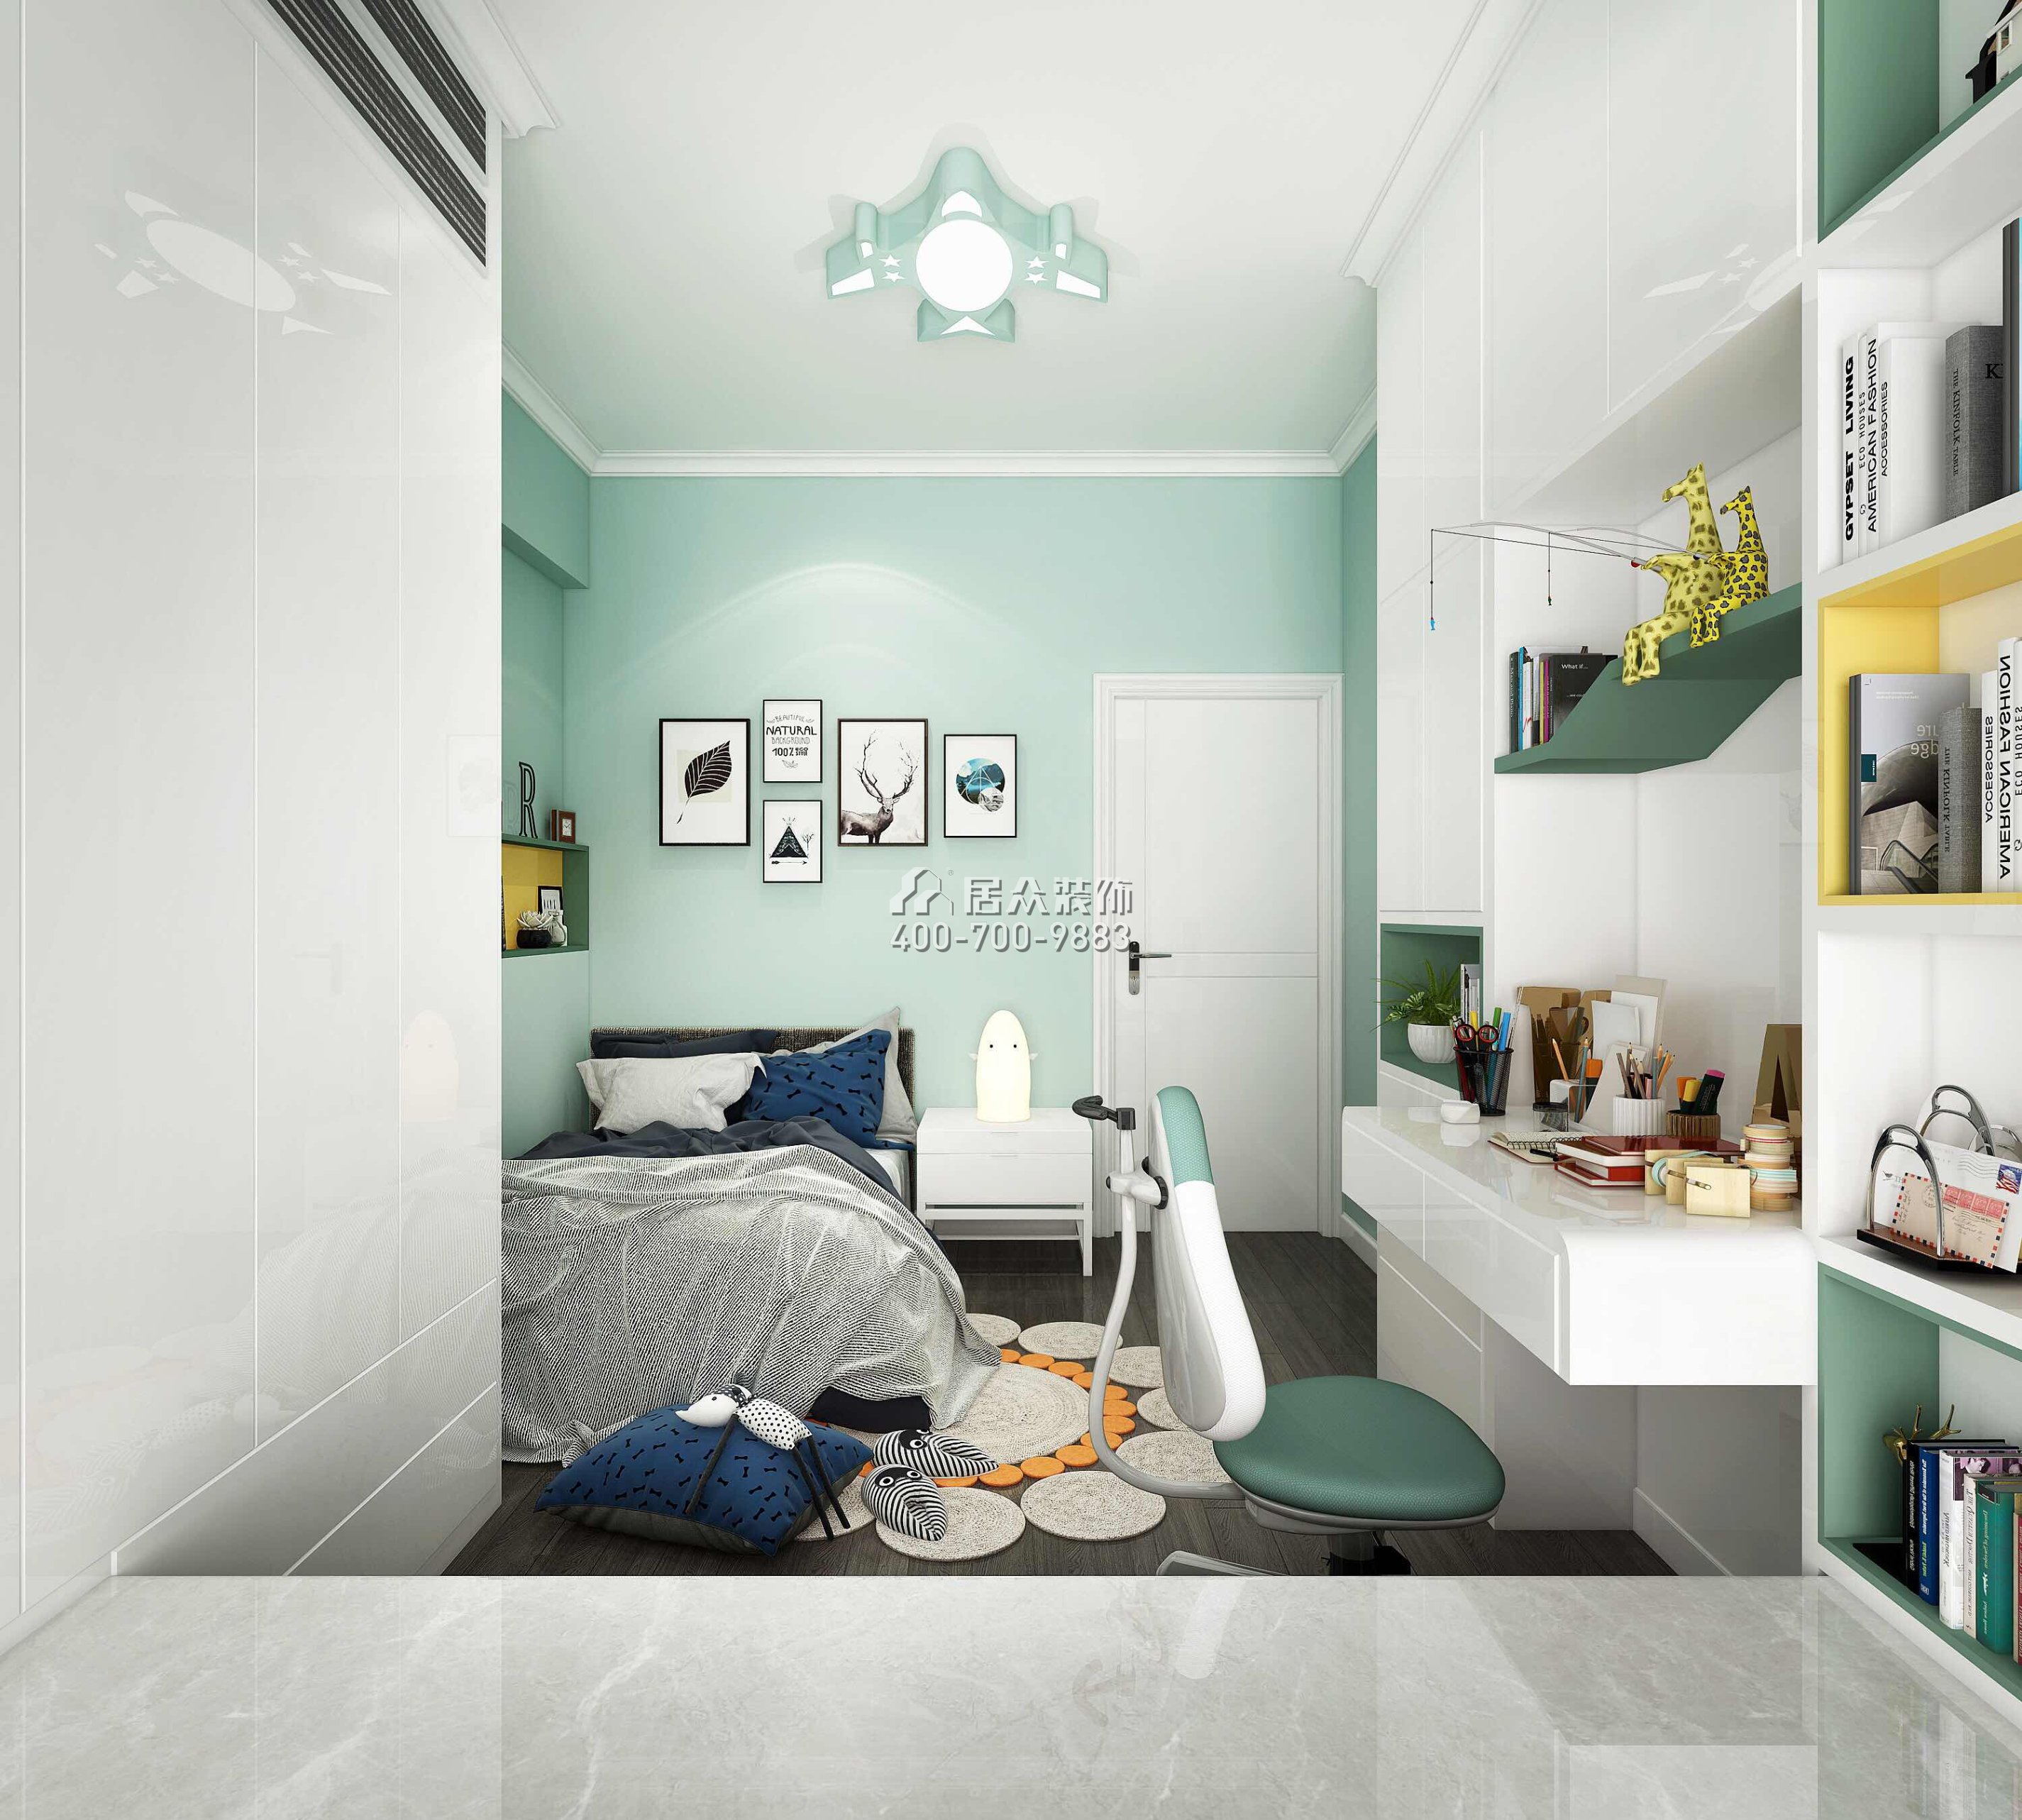 阳光粤海151平方米现代简约风格平层户型卧室装修效果图